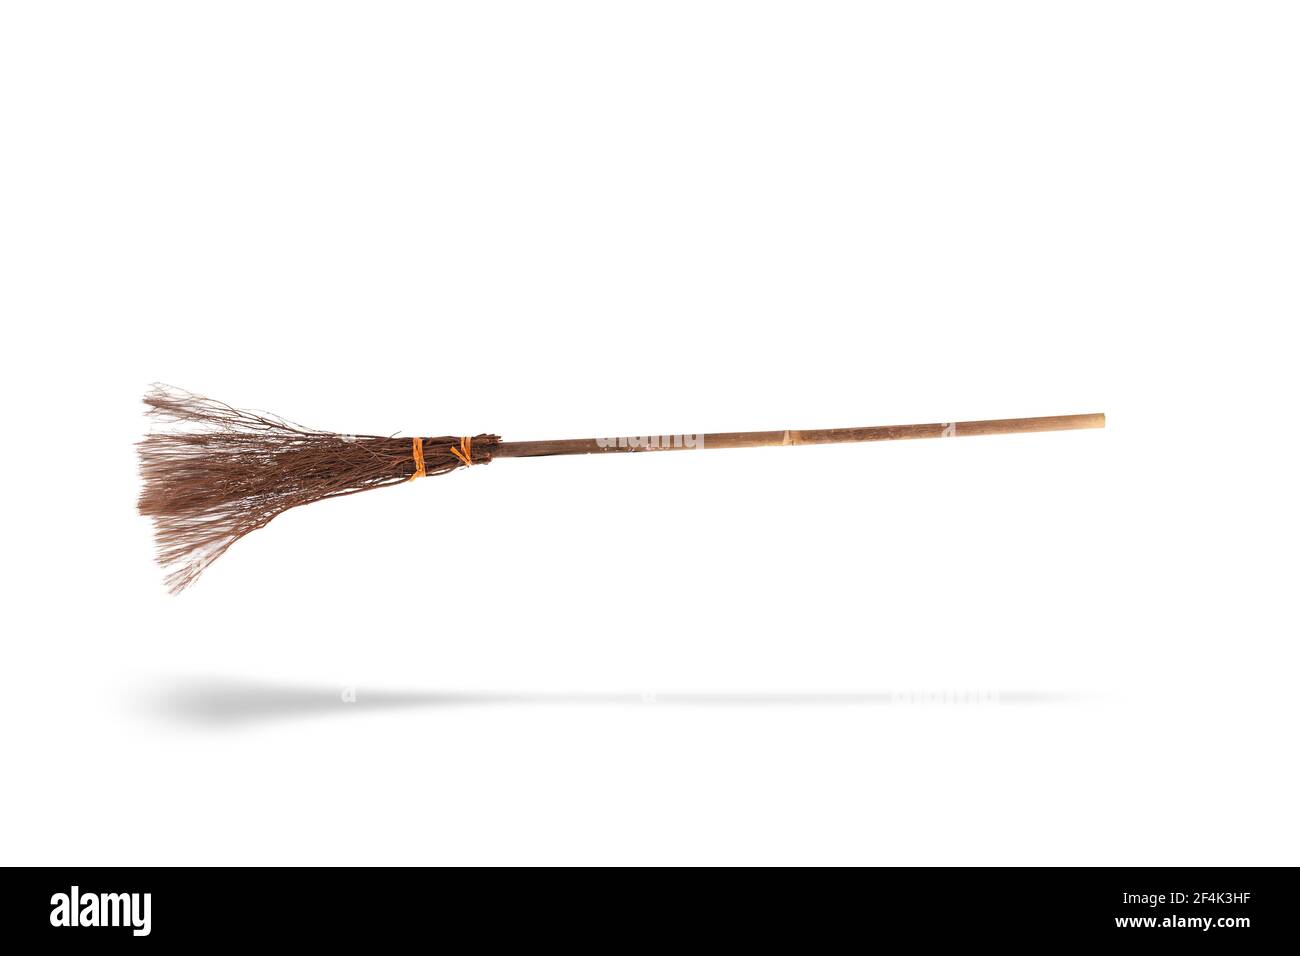 Detail Image Of Broomstick Nomer 25